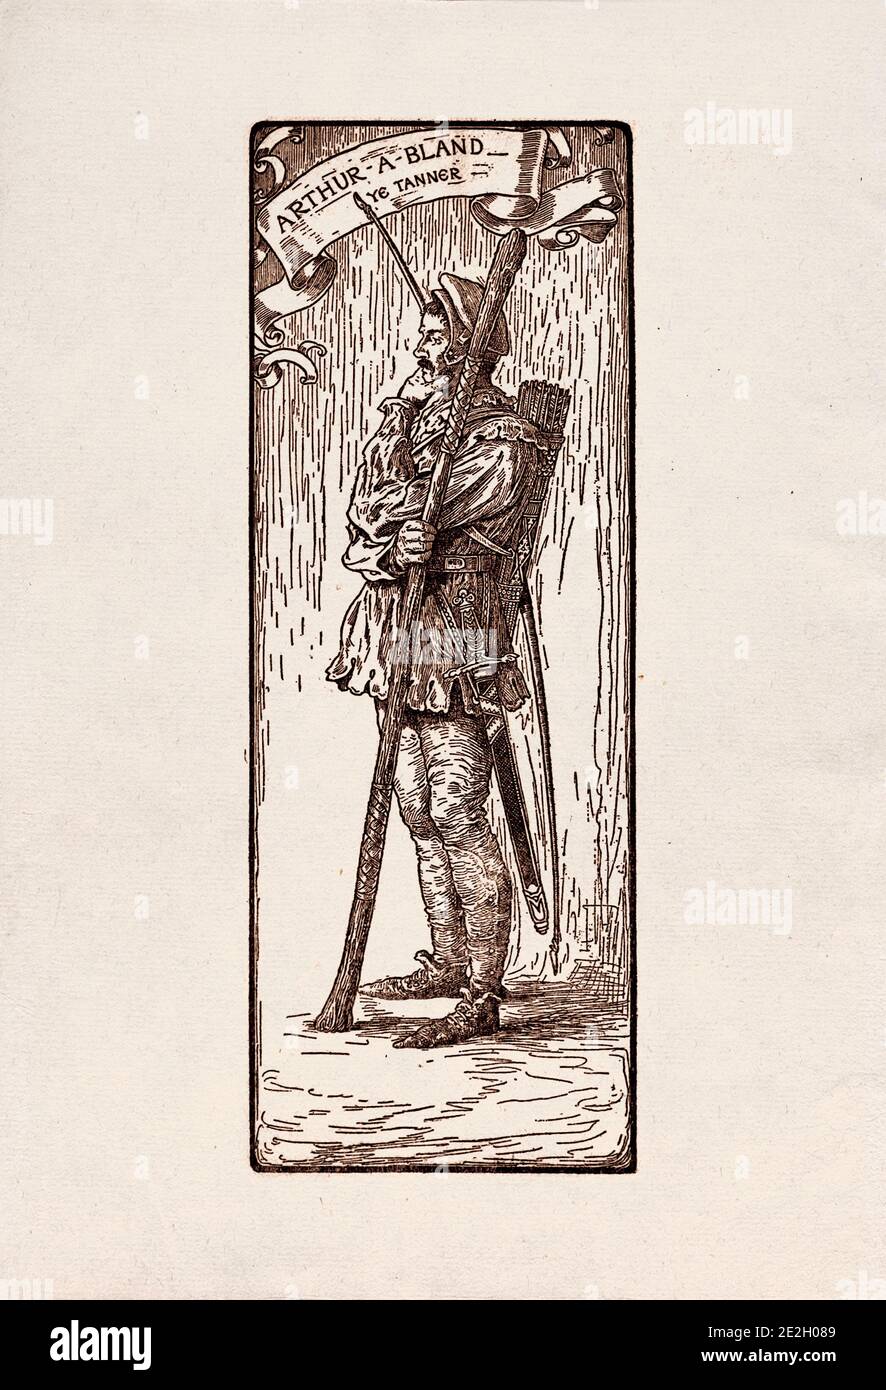 Gravure antique de personnages littéraires du folklore anglais des légendes Robin des Bois. Arthur-a-Bland. Le Tanner. Par Louis Rhead. 1912 Banque D'Images